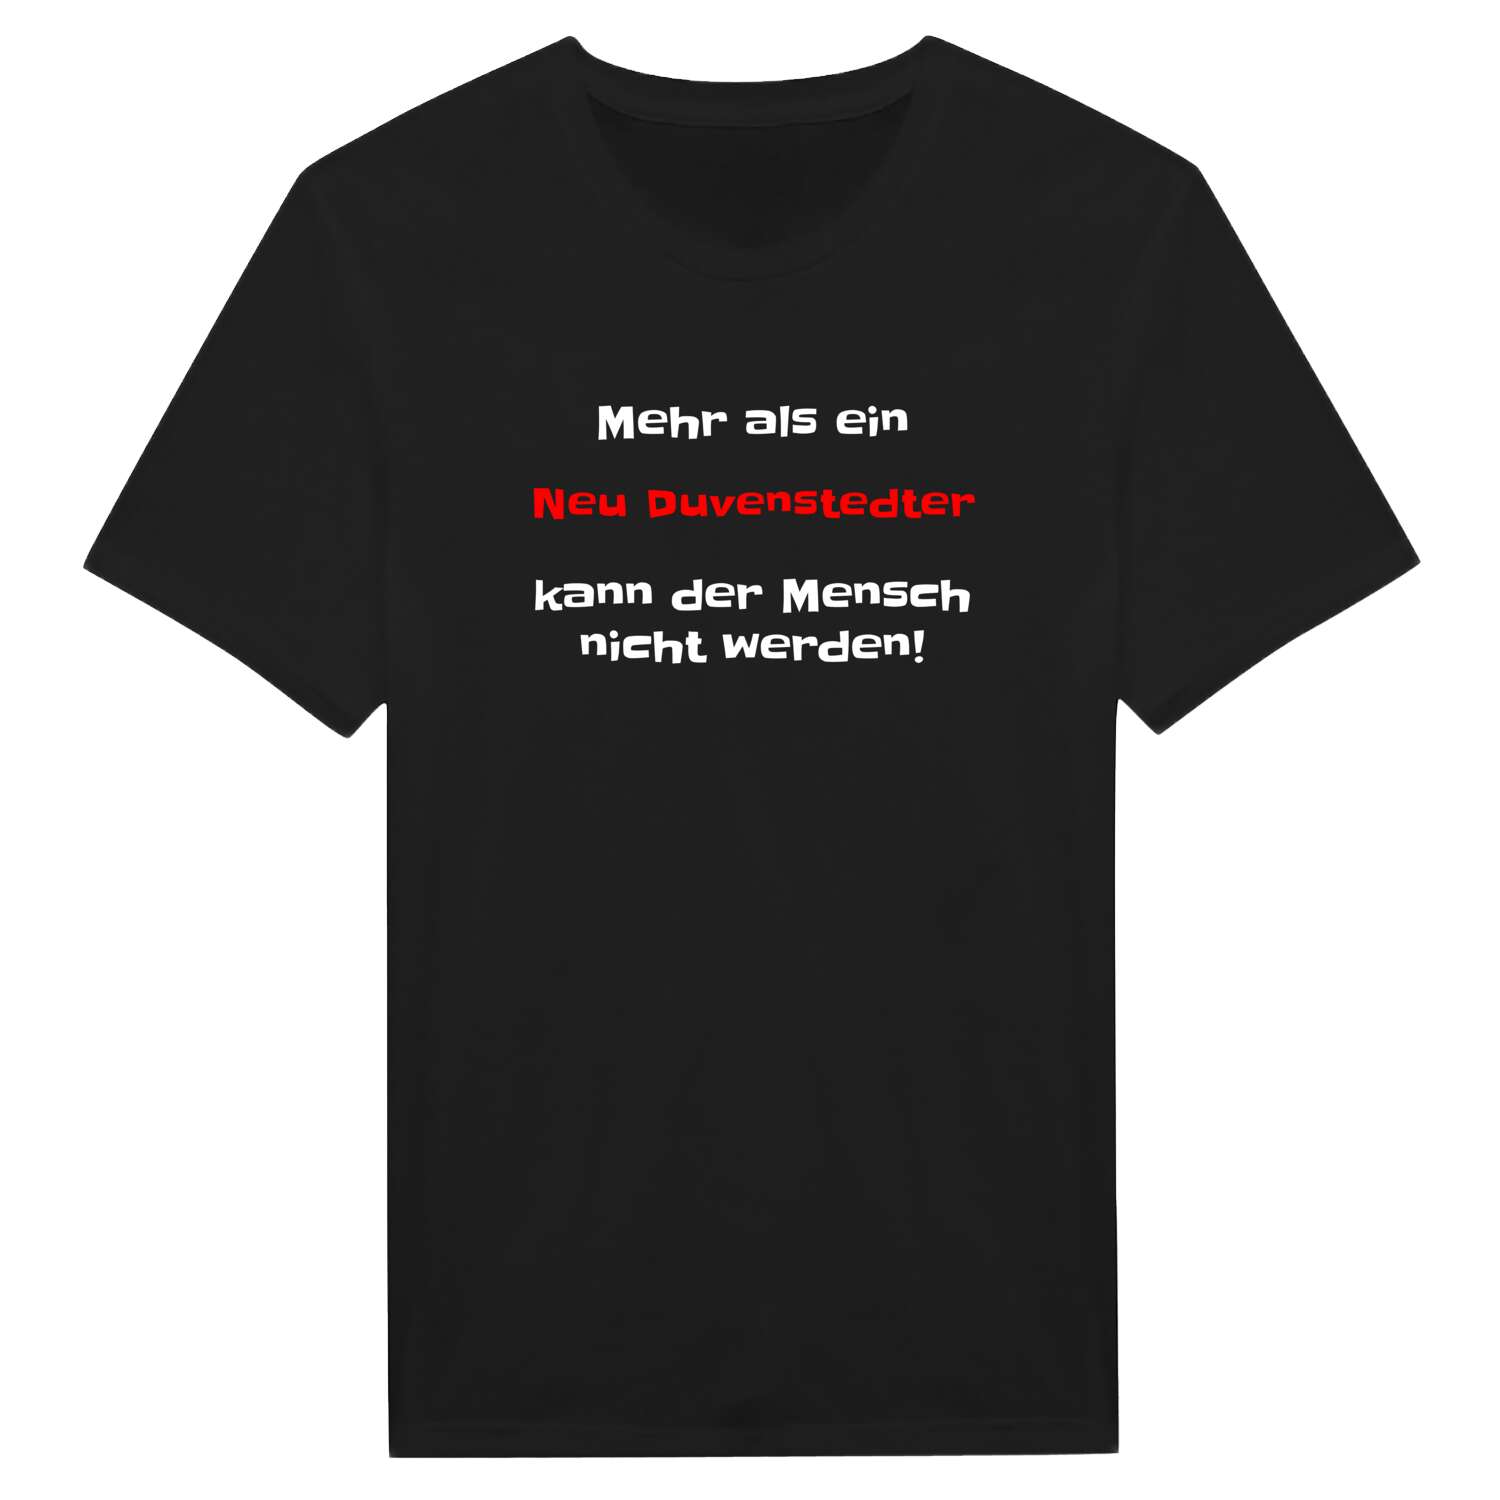 Neu Duvenstedt T-Shirt »Mehr als ein«